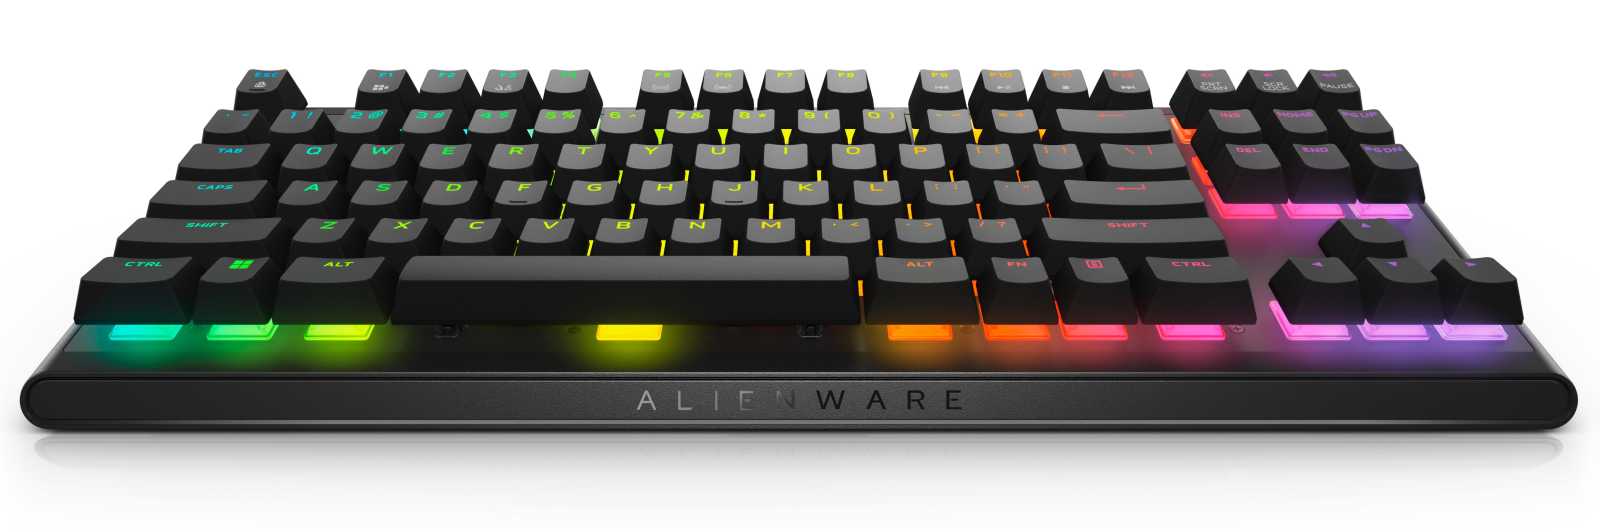 Mechanická klávesnice AW420K od Alienware: Skvělá, ale připlatíte si